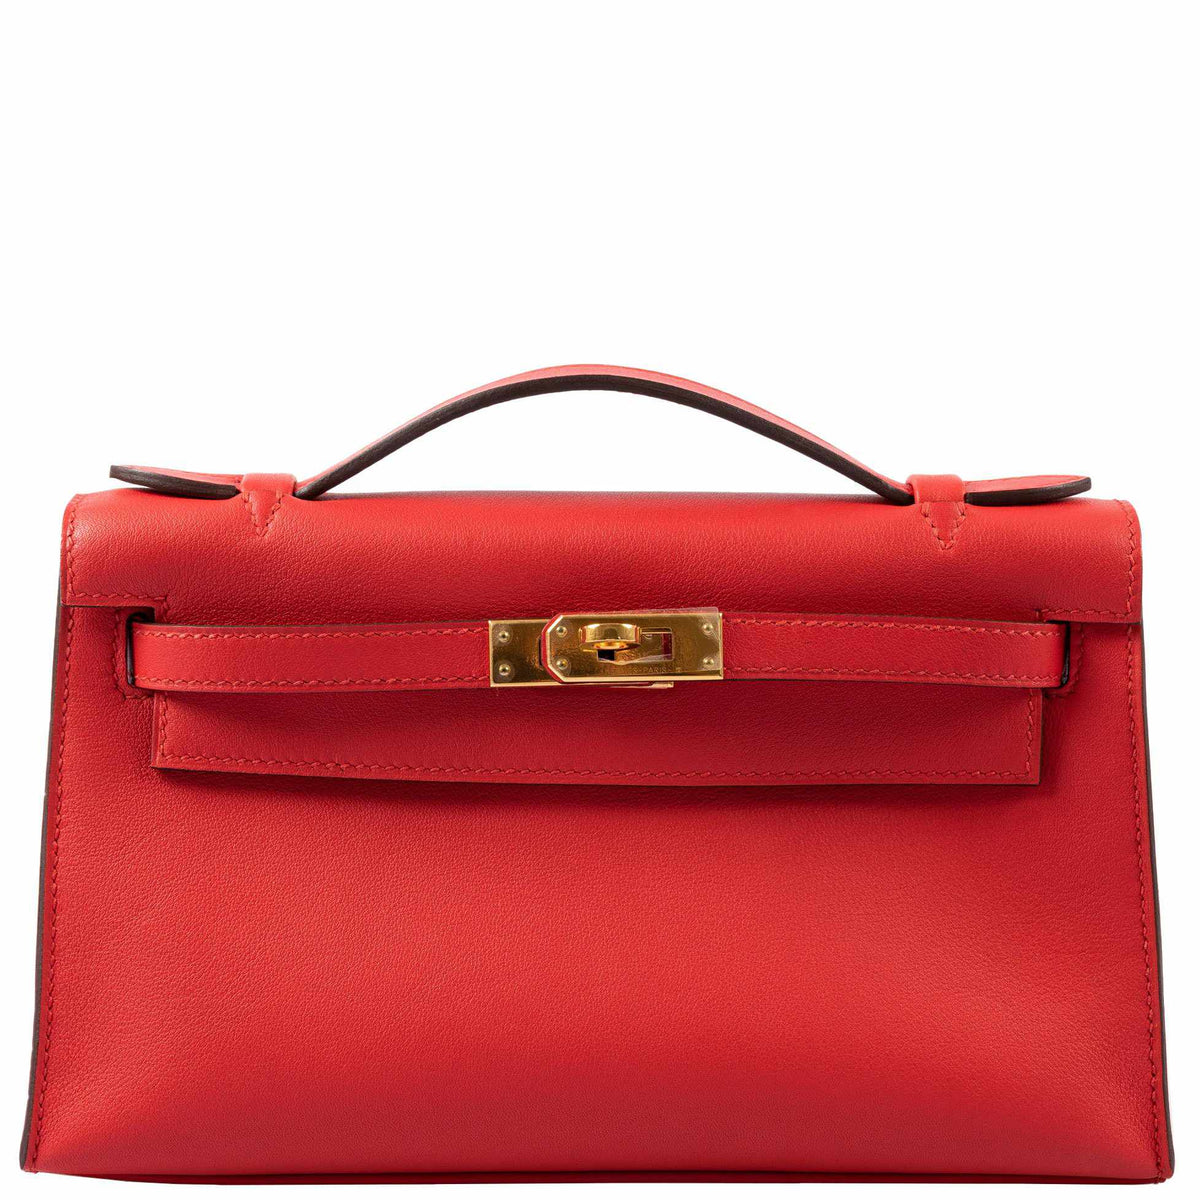 Hermes Kelly 22 Pochette Bag Red Swift Gold Hardware $2200